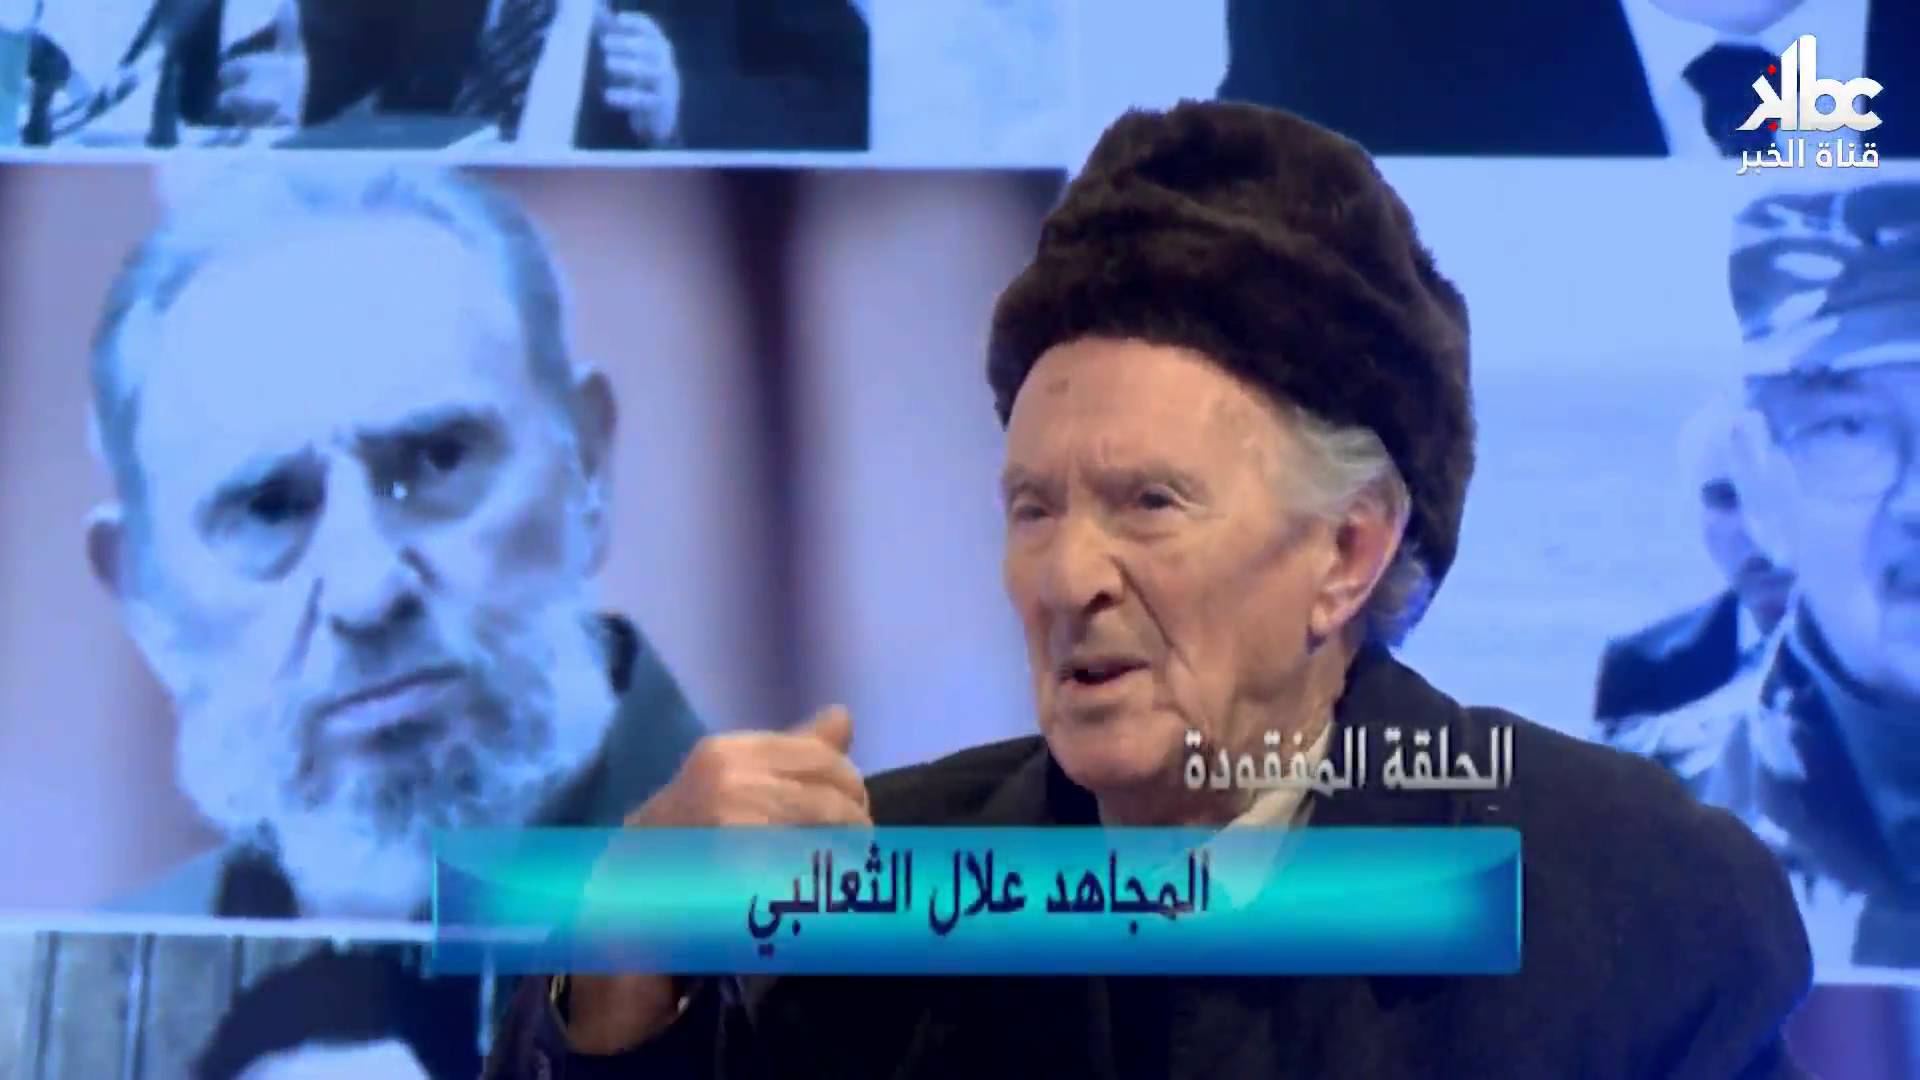 اغتيال بوضياف في برنامج تلفزيوني بالجزائر